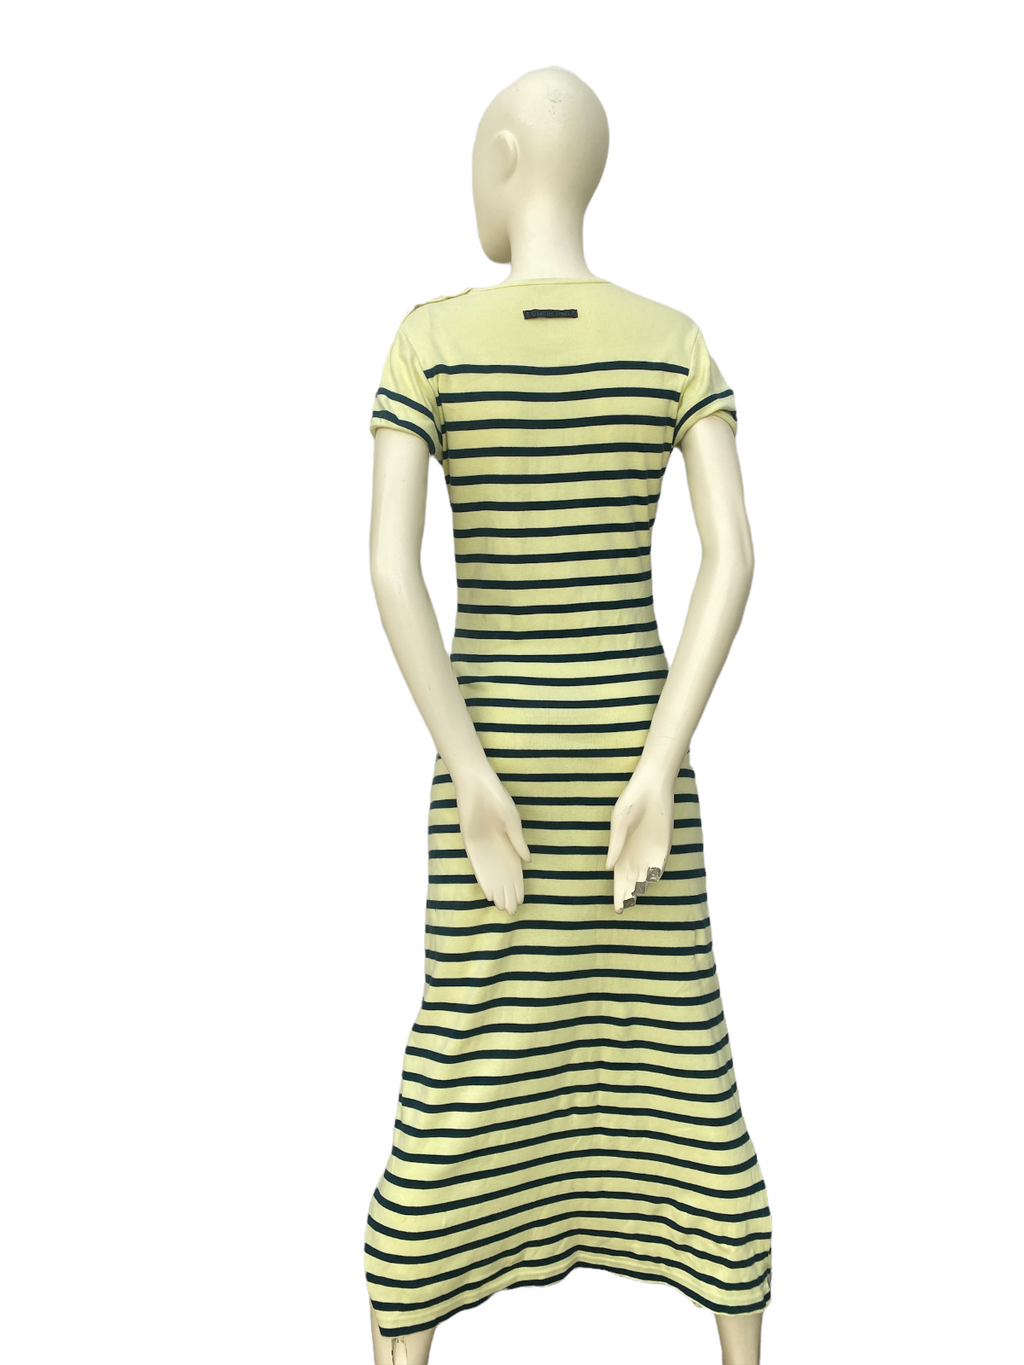 Vintage Long Yellow Striped Dress